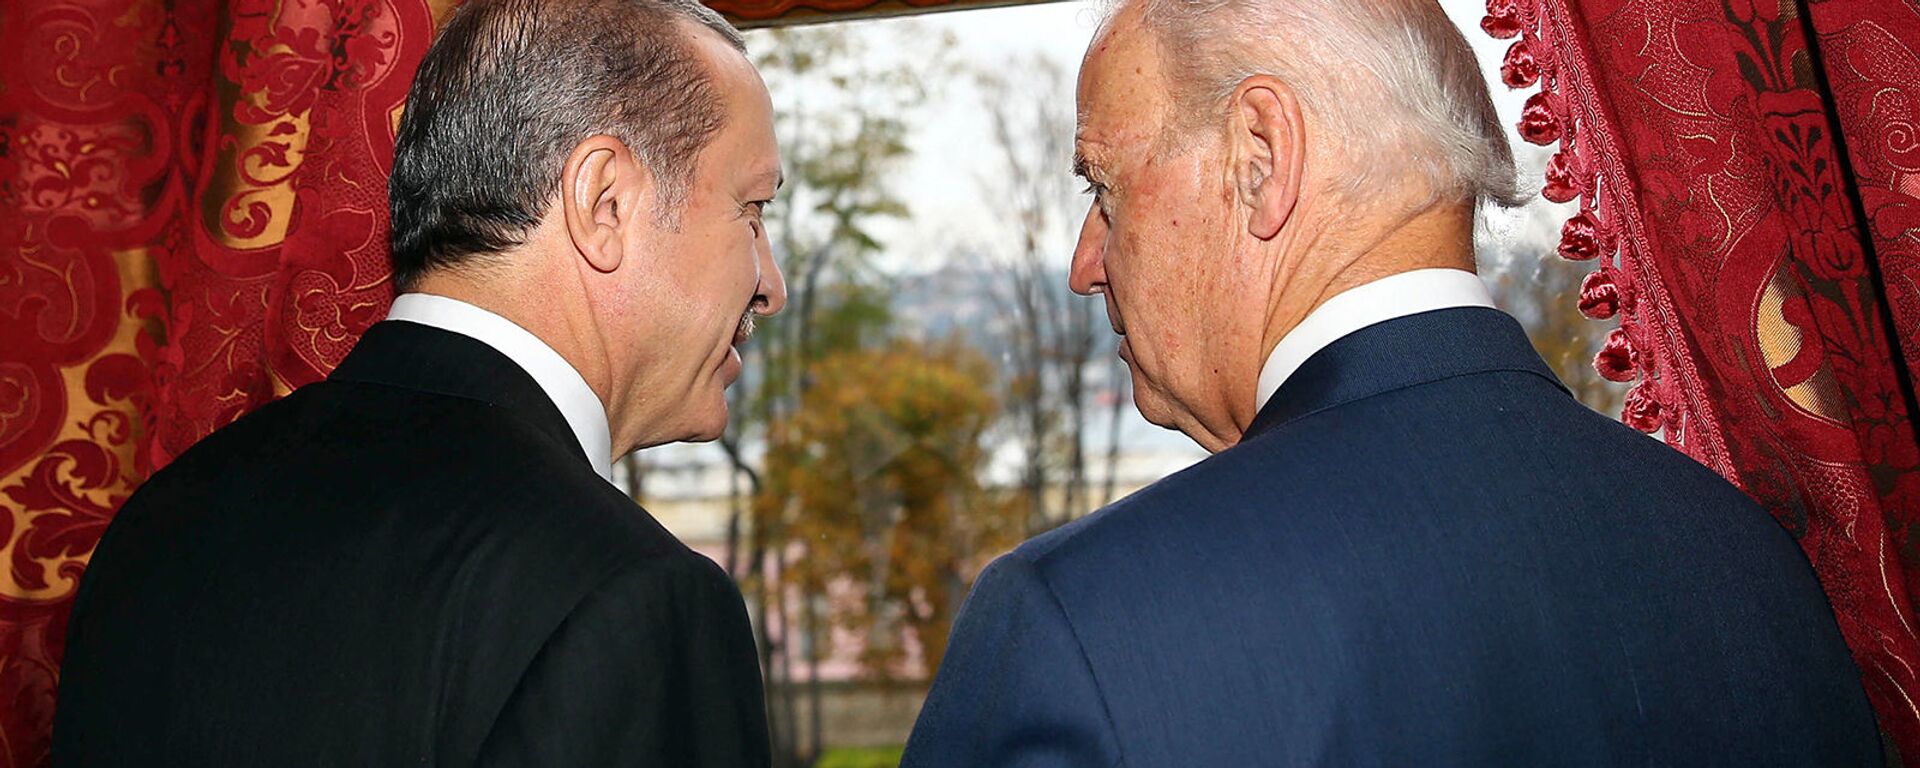 Беседа вице-президента США Джо Байдена с президентом Турции Реджепом Эрдоганом во дворце Бейлербейи (22 ноября 2014).  Стамбул - Sputnik Армения, 1920, 12.06.2021